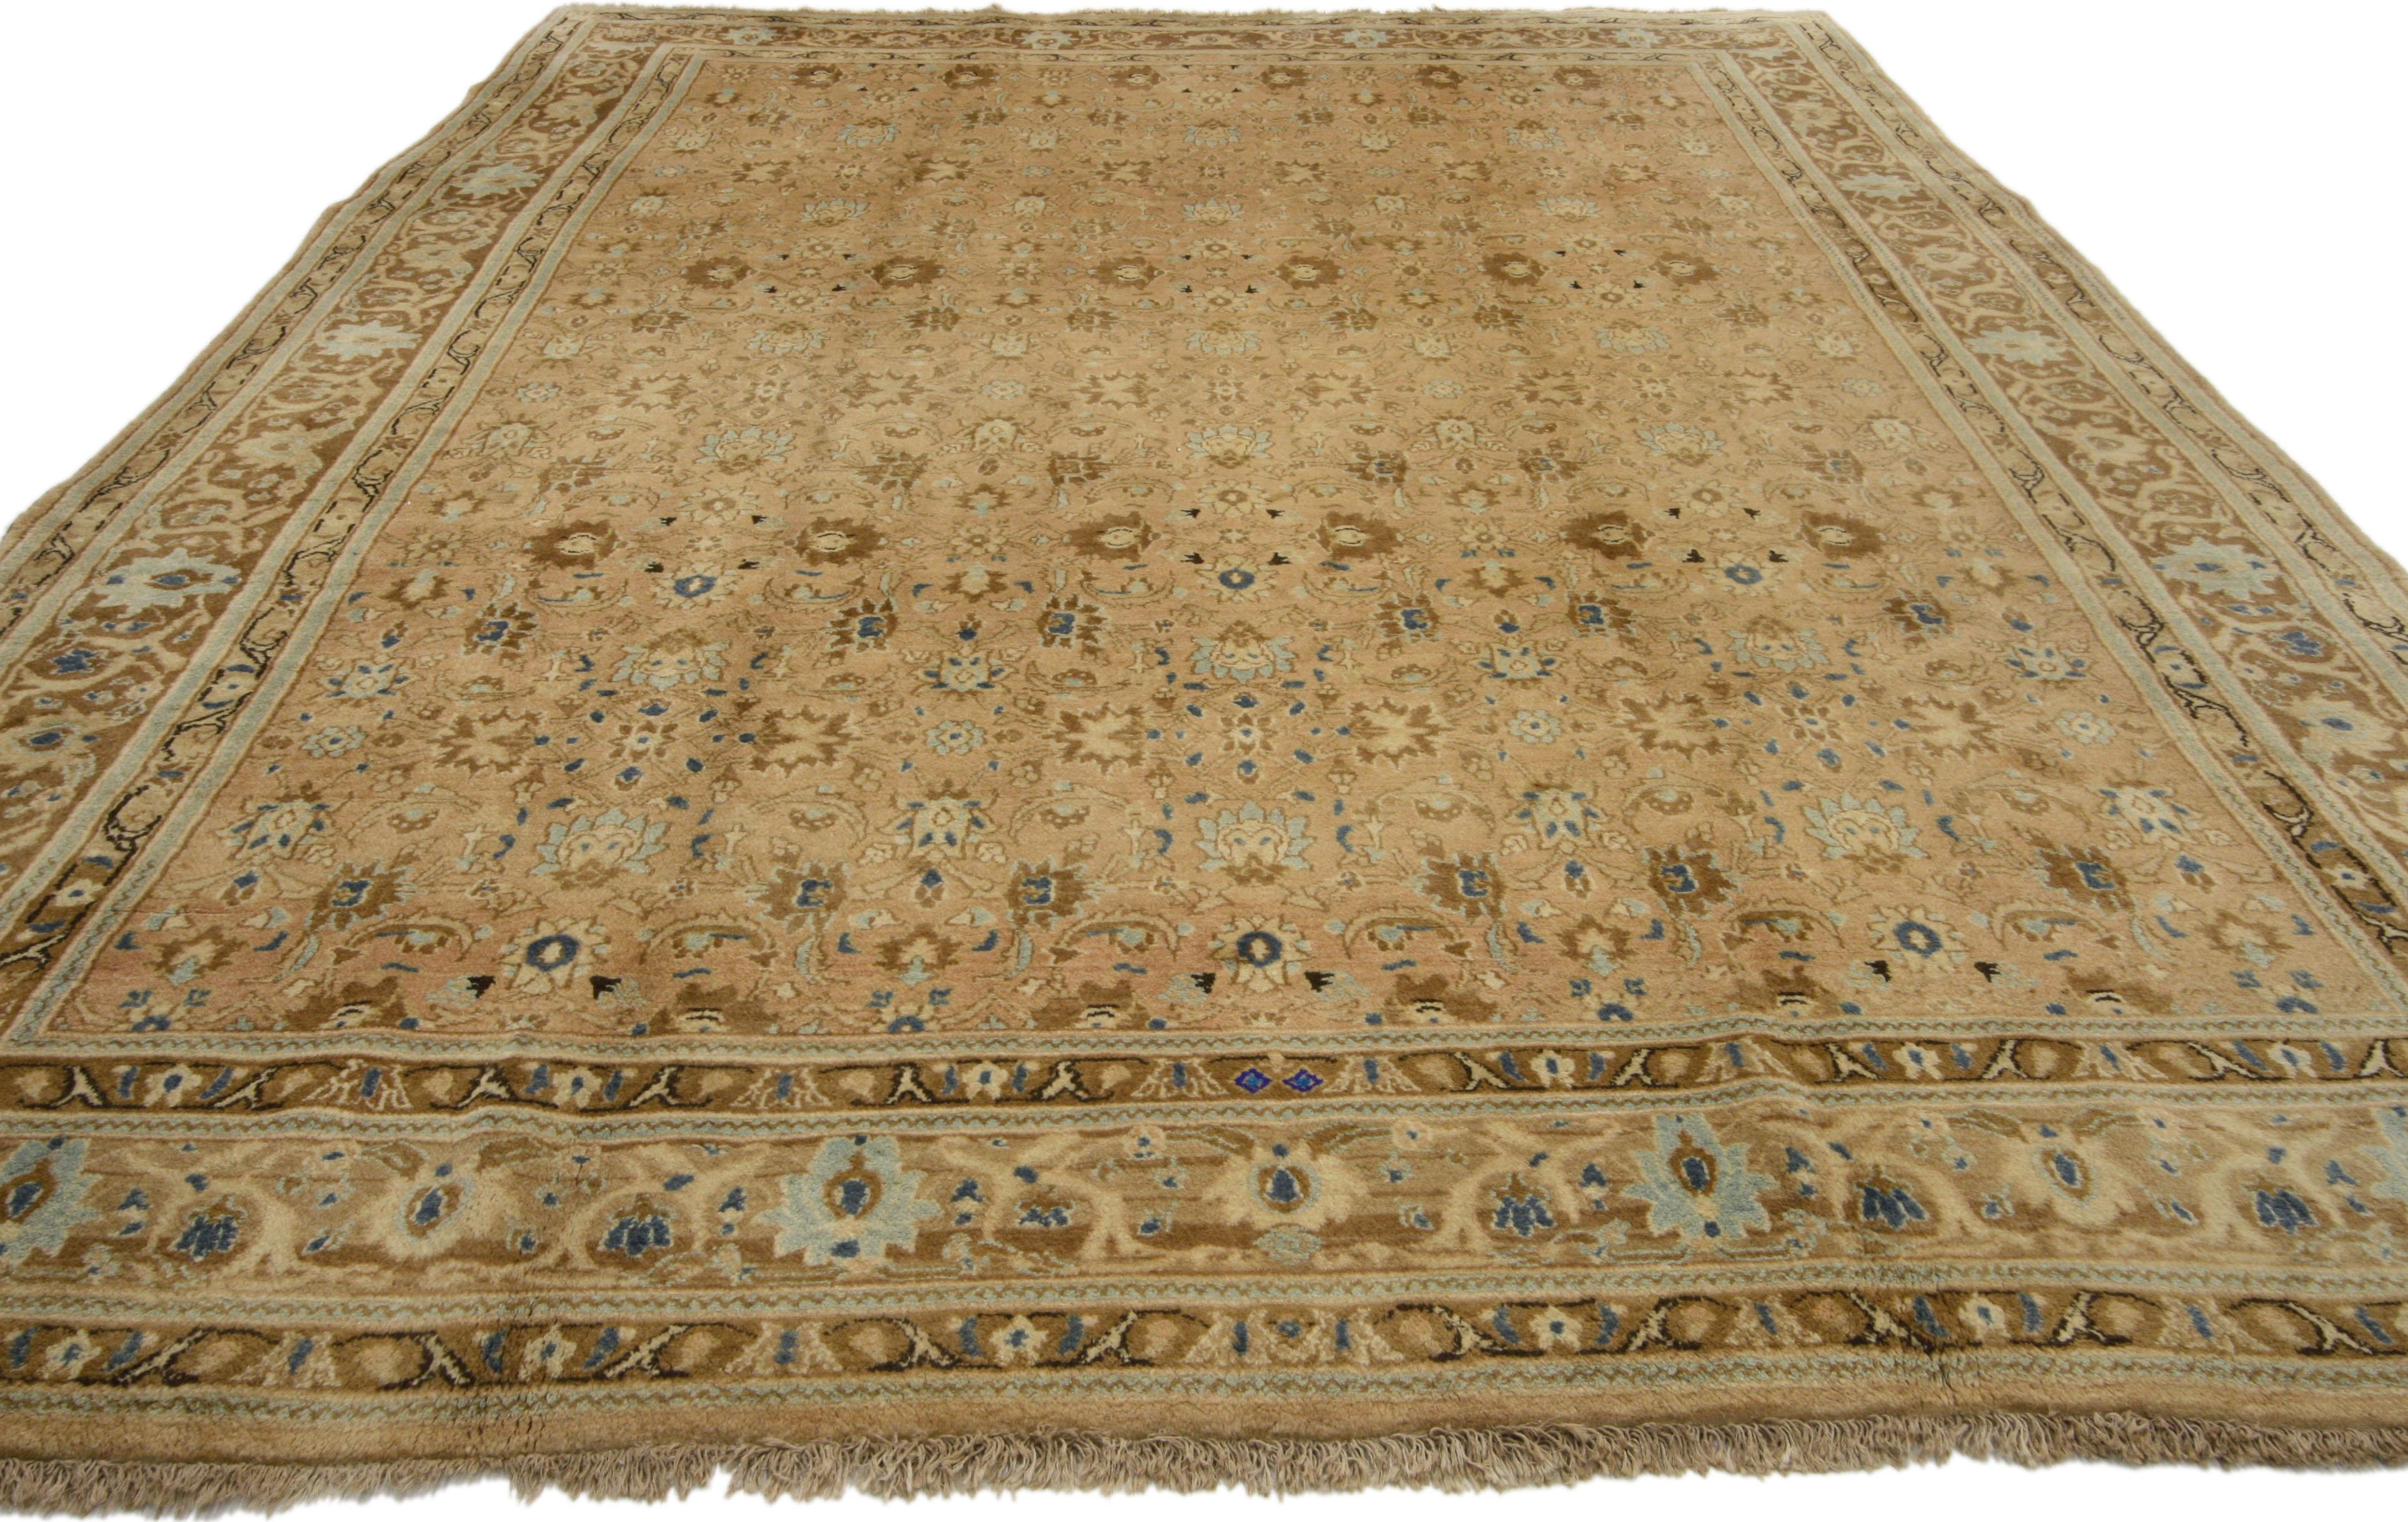 76144 Tapis persan vintage Mashhad de style néo-colonial aux couleurs chaudes et neutres. Ce tapis persan vintage Mashhad en laine nouée à la main présente un motif Shah Abbasi sur toute sa surface, réparti sur un champ abrasif. L'ancien motif